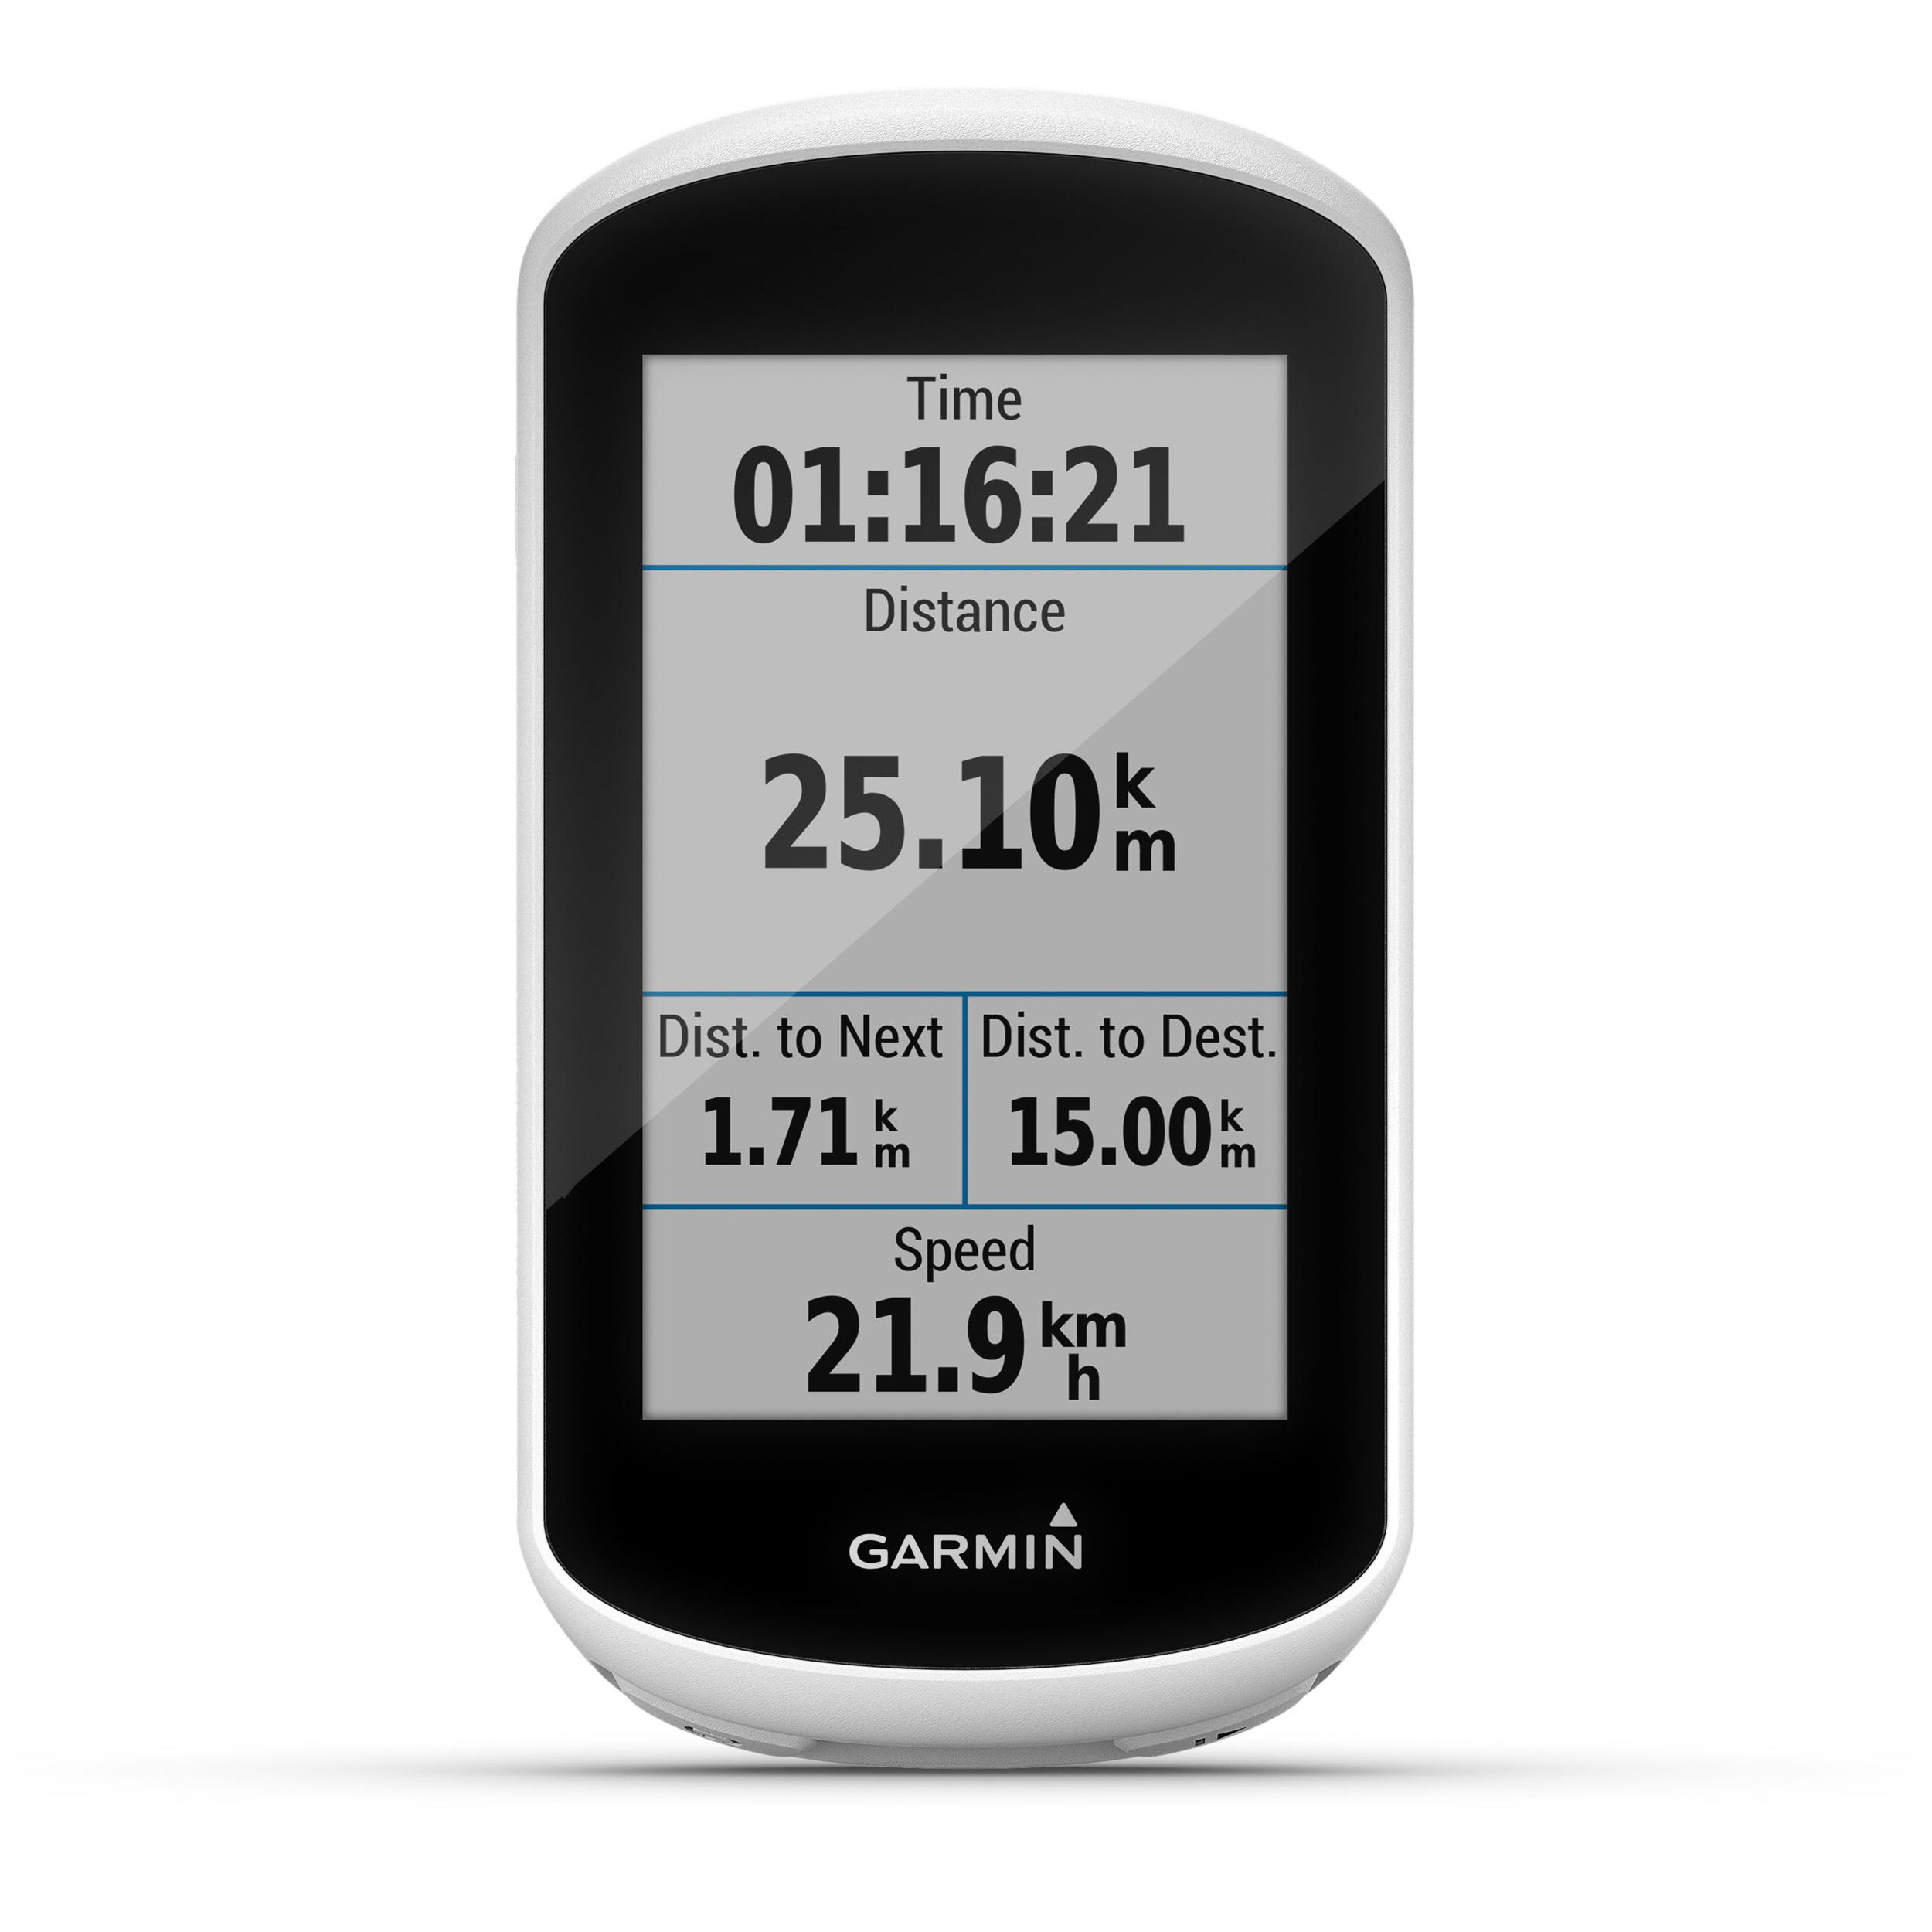 Nacht Het is goedkoop Amfibisch GPS kopen? | Decathlon.nl